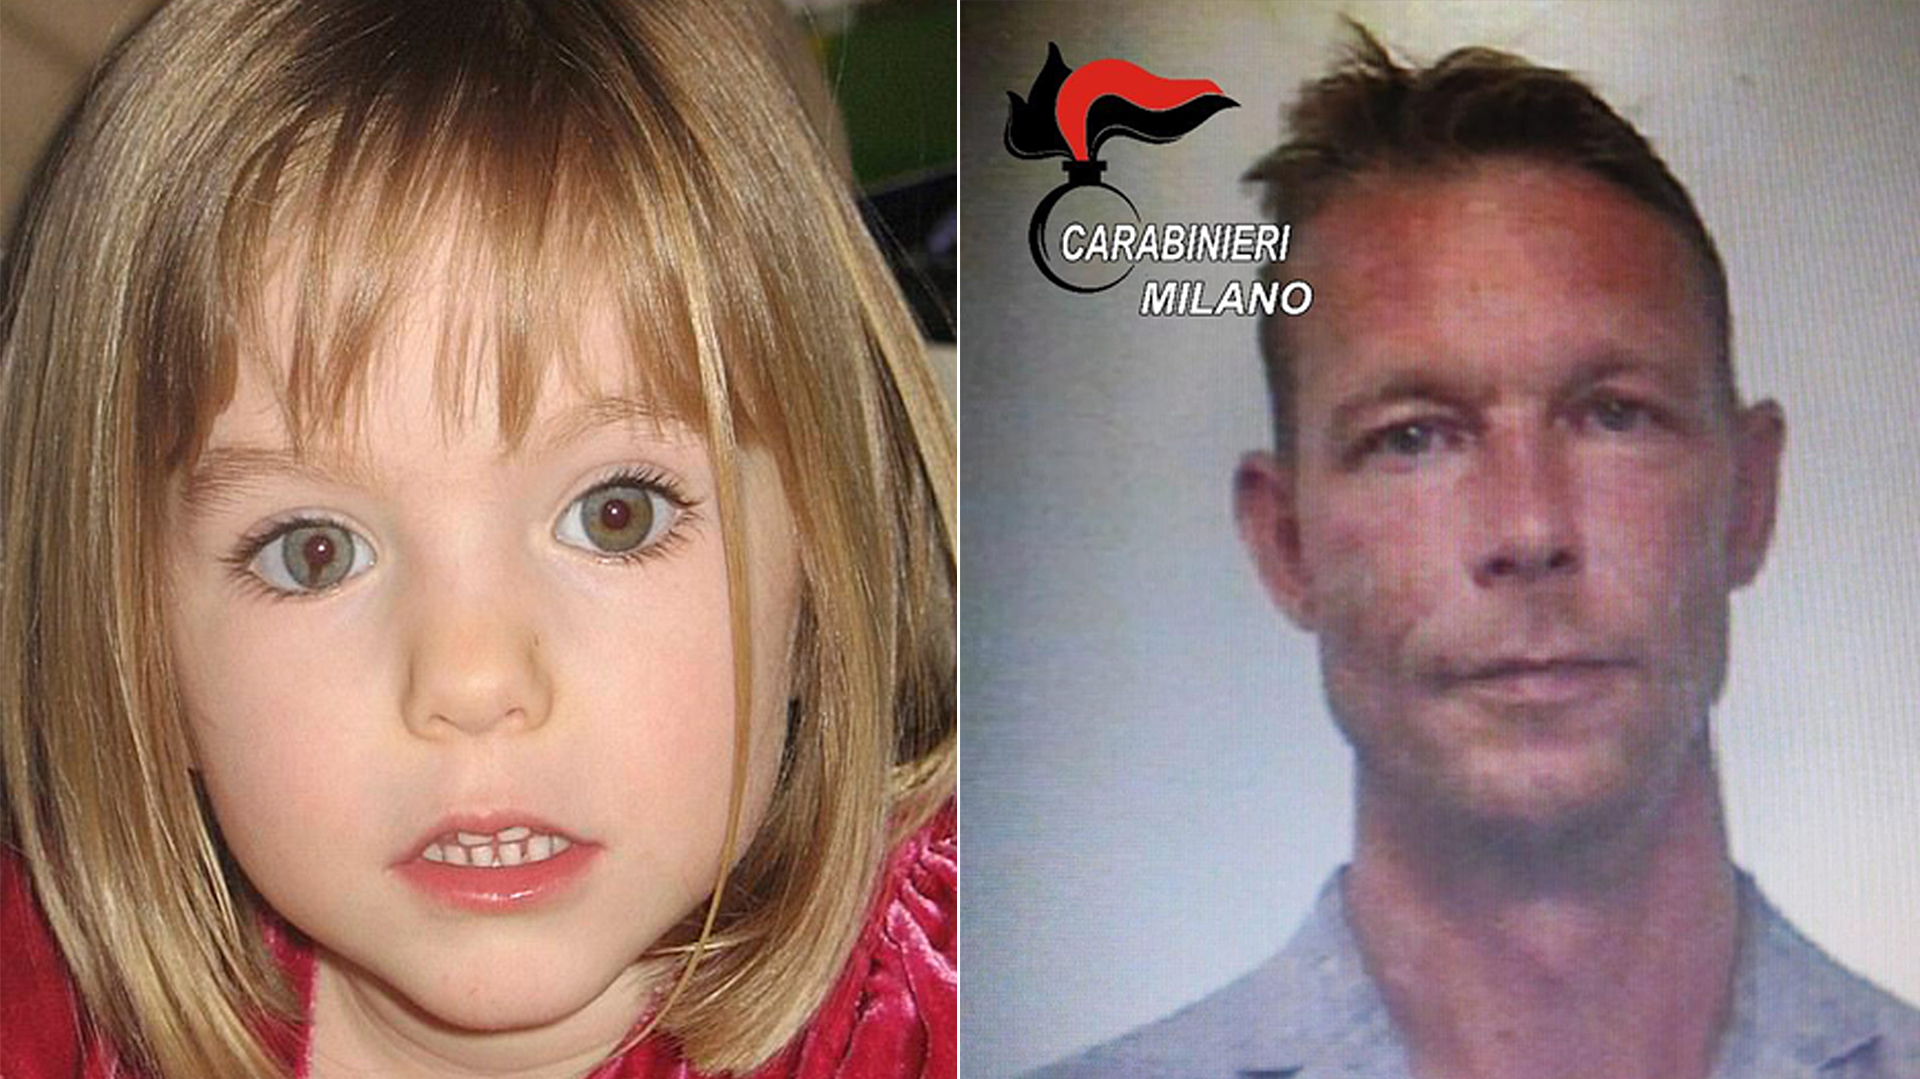 Madeleine McCann estaba a punto de cumplir cuatro años cuando fue secuestrada de un hotel en Praia da Luz, Portugal, en mayo de 2007. Christian Brueckner, un alemán de 43 años con denuncias previas de abuso infantil, se convirtió en el principal sospechoso